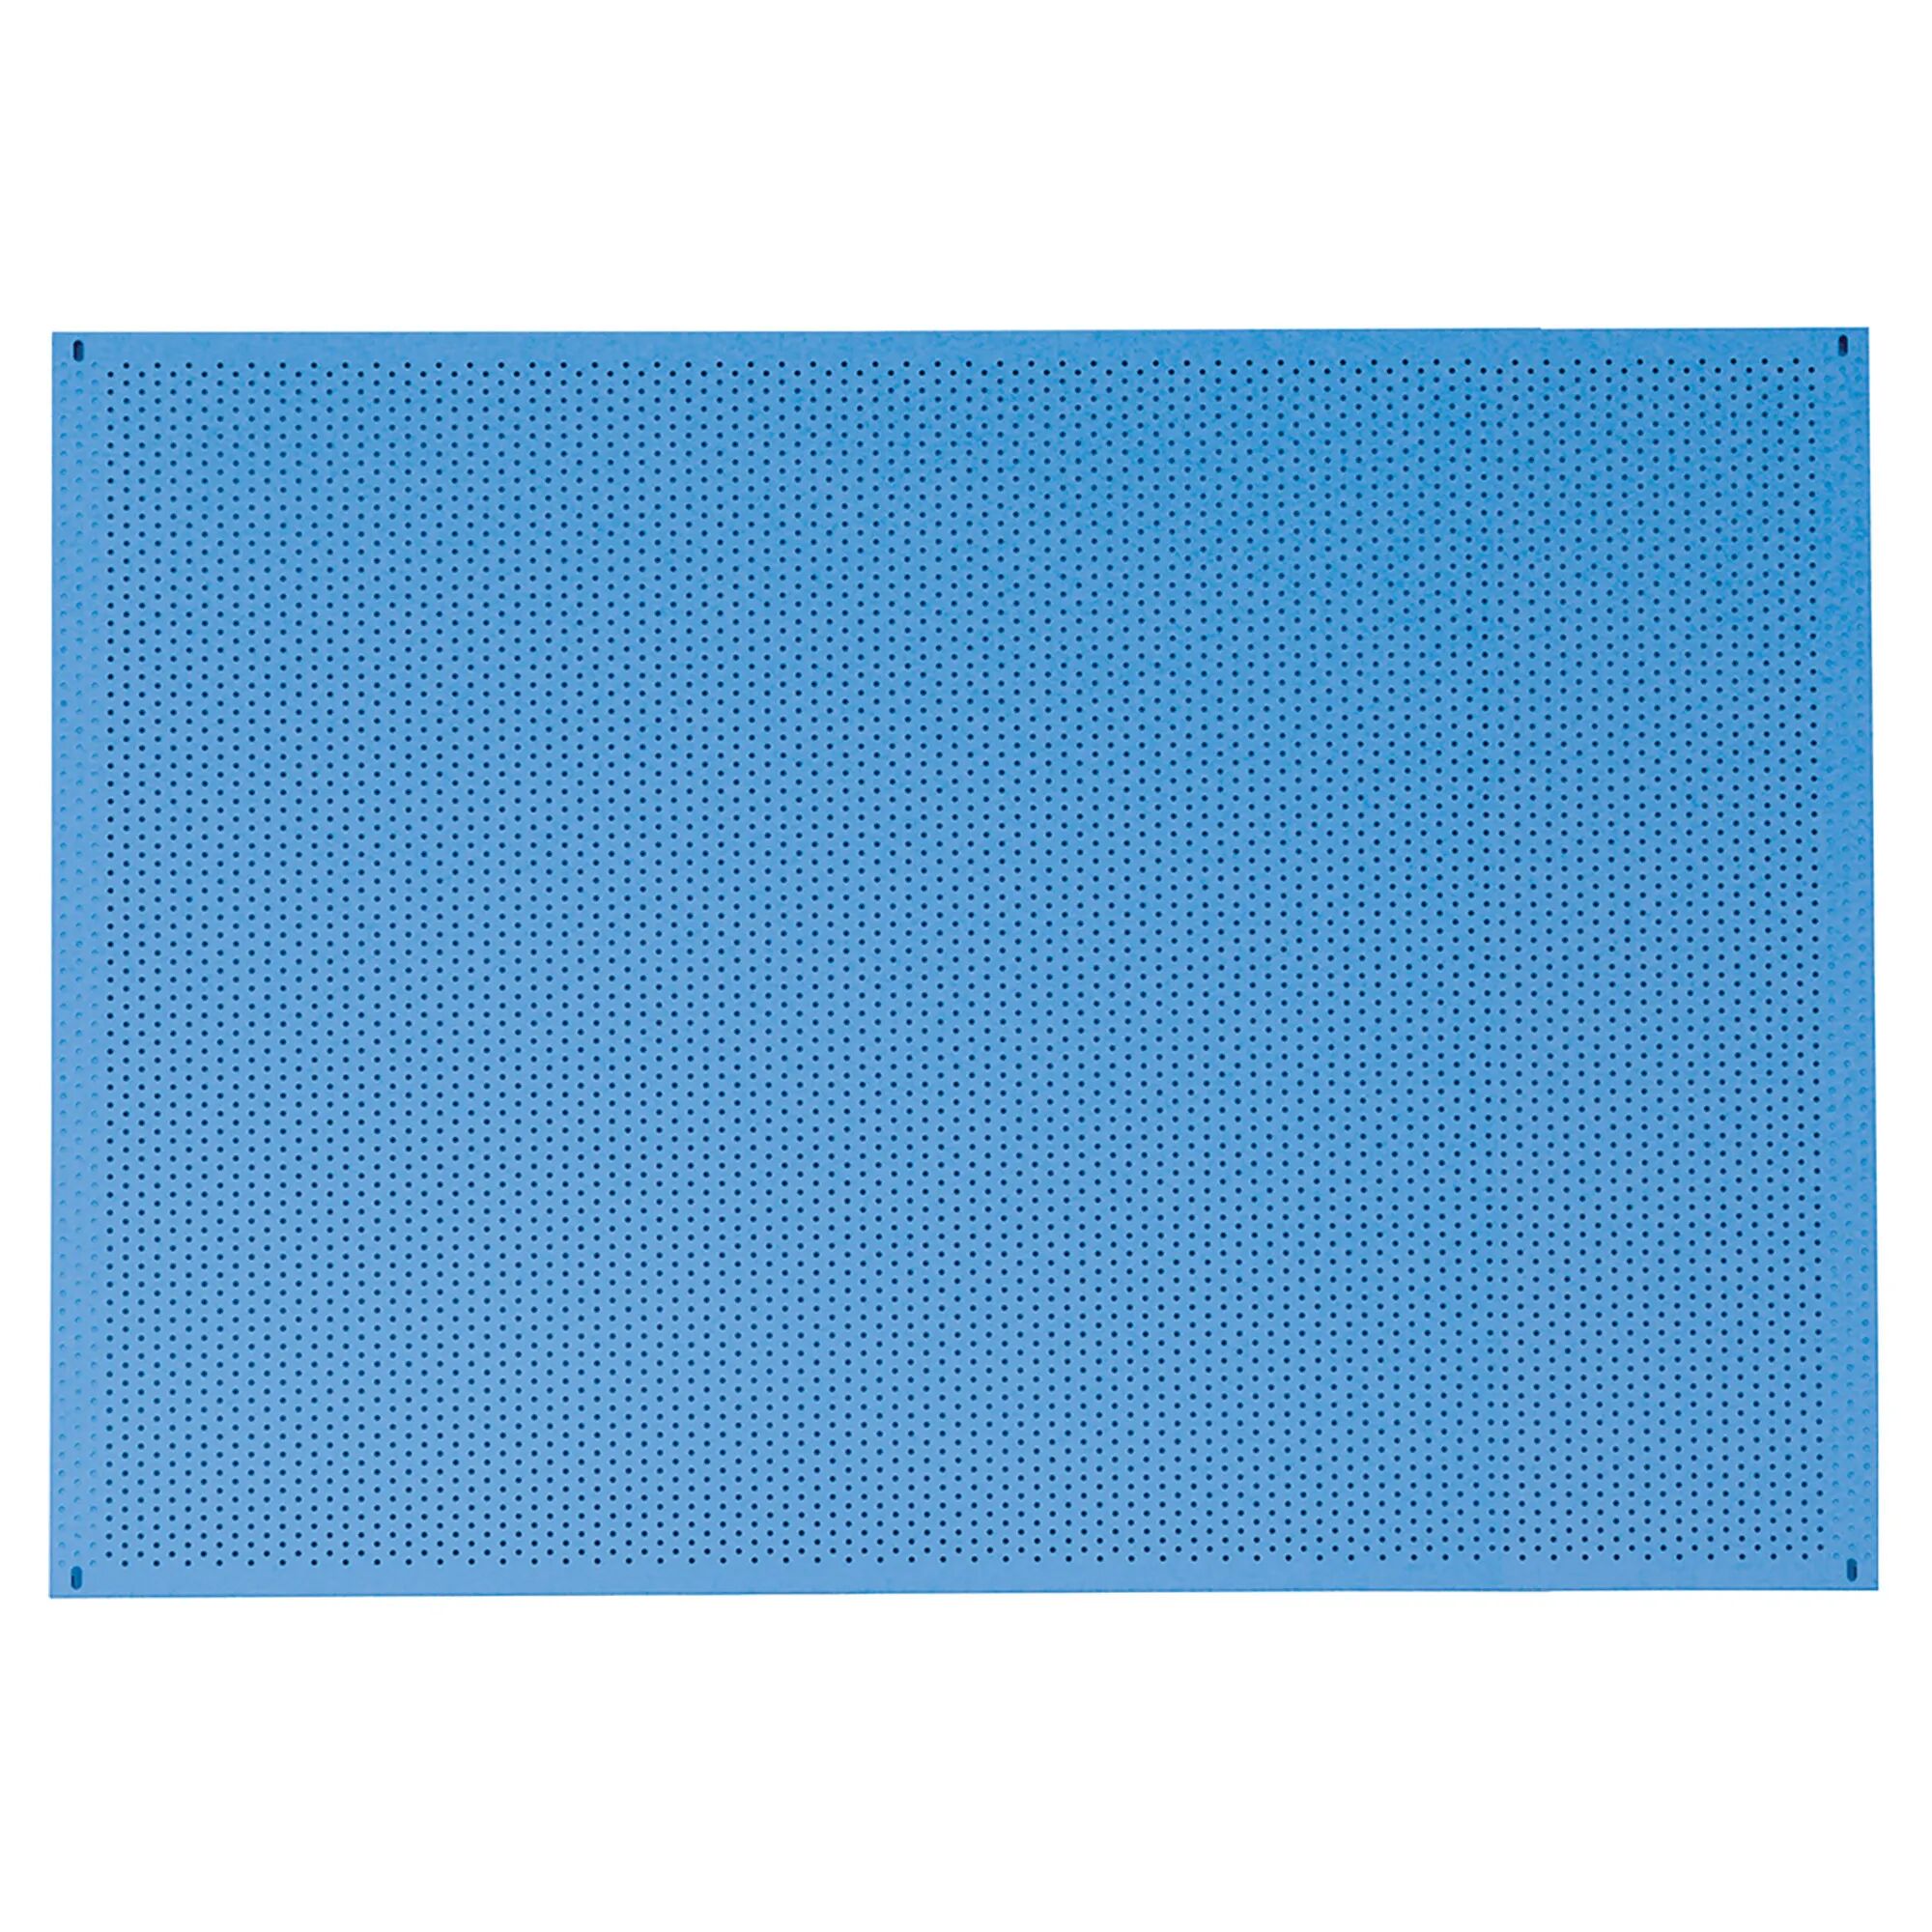 fami pannello porta attrezzi foro tondo Ø 4 mm 1500x850 mm colore blu